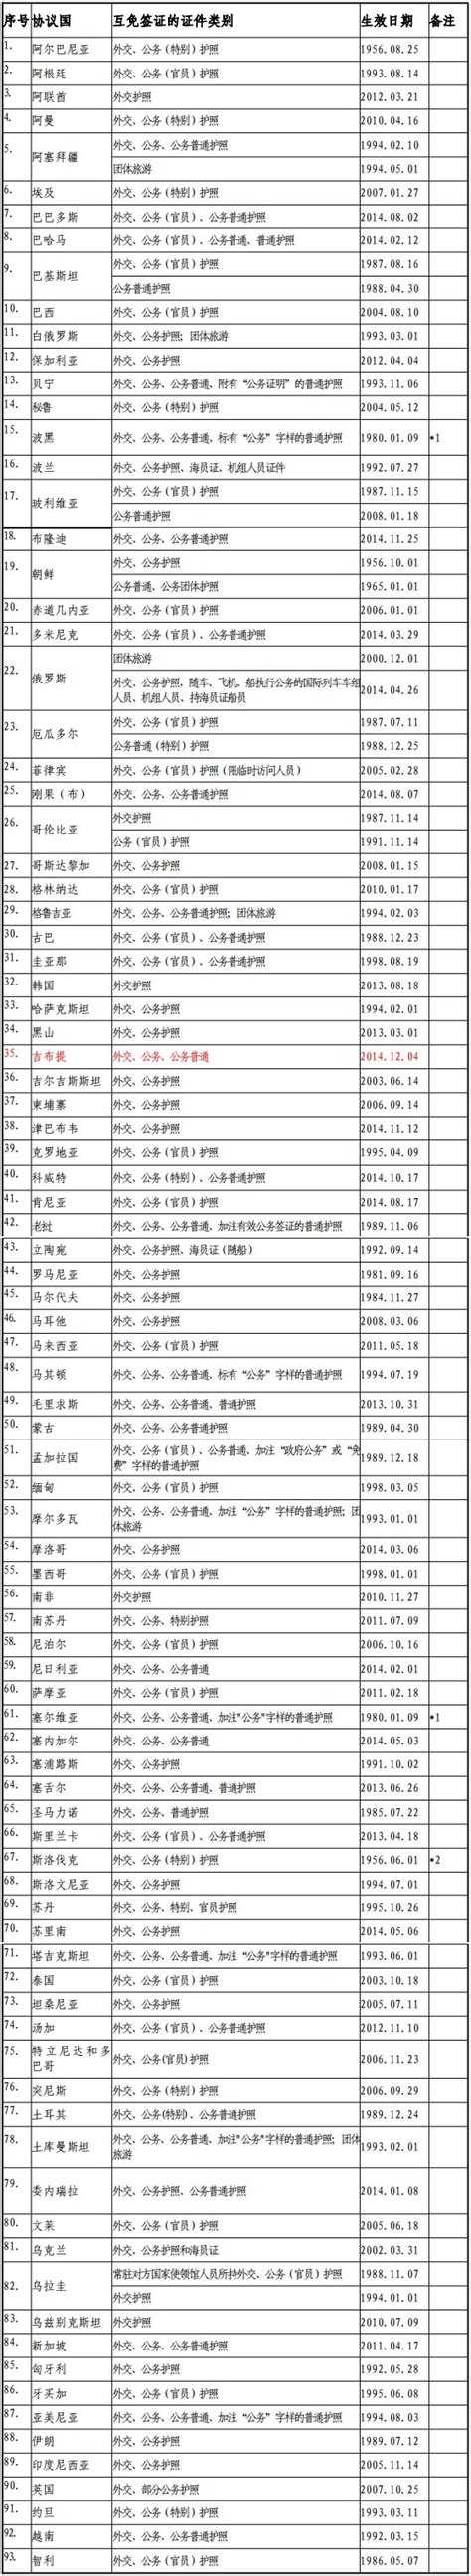 各国签证一览表-广西南宁桂国会议服务有限公司